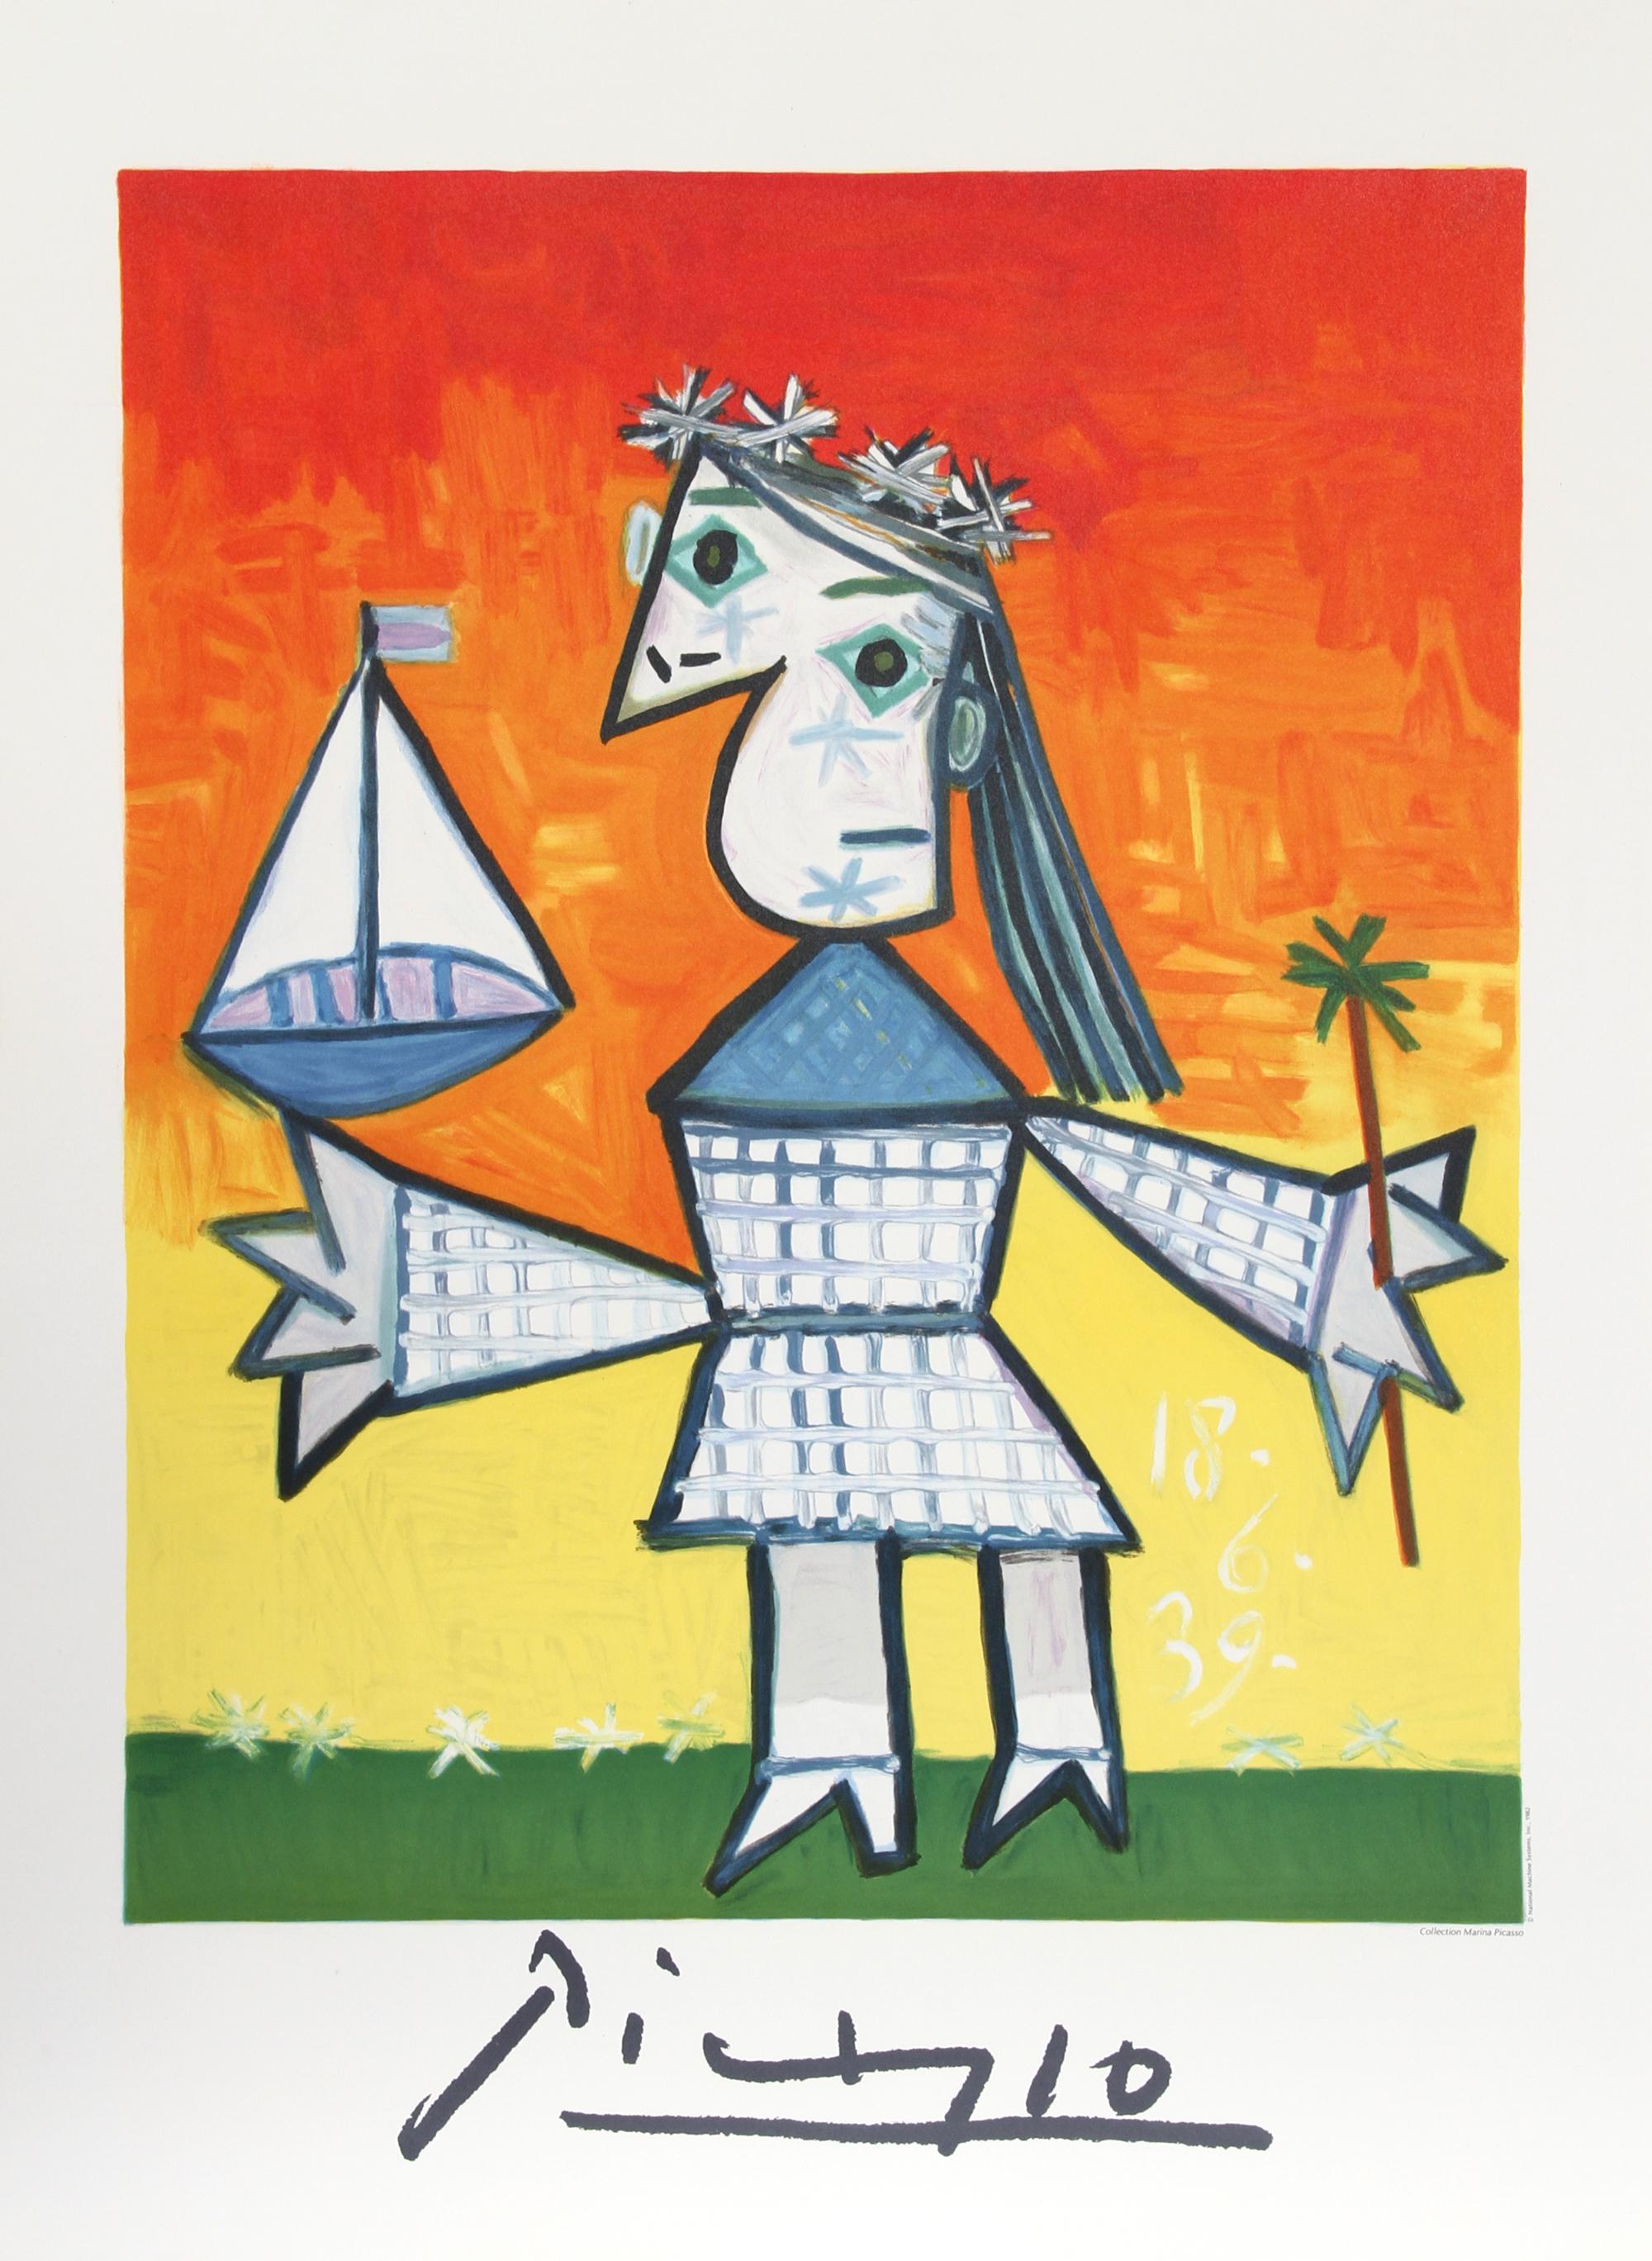 Ein originales lithografisches Poster in limitierter Auflage nach dem berühmten Gemälde von Pablo Picasso "Fillette Couronee au Bateau". Das Ölgemälde wurde 1939 fertiggestellt. In den 1970er Jahren, nach Picassos Tod, autorisierte Marina Picasso,